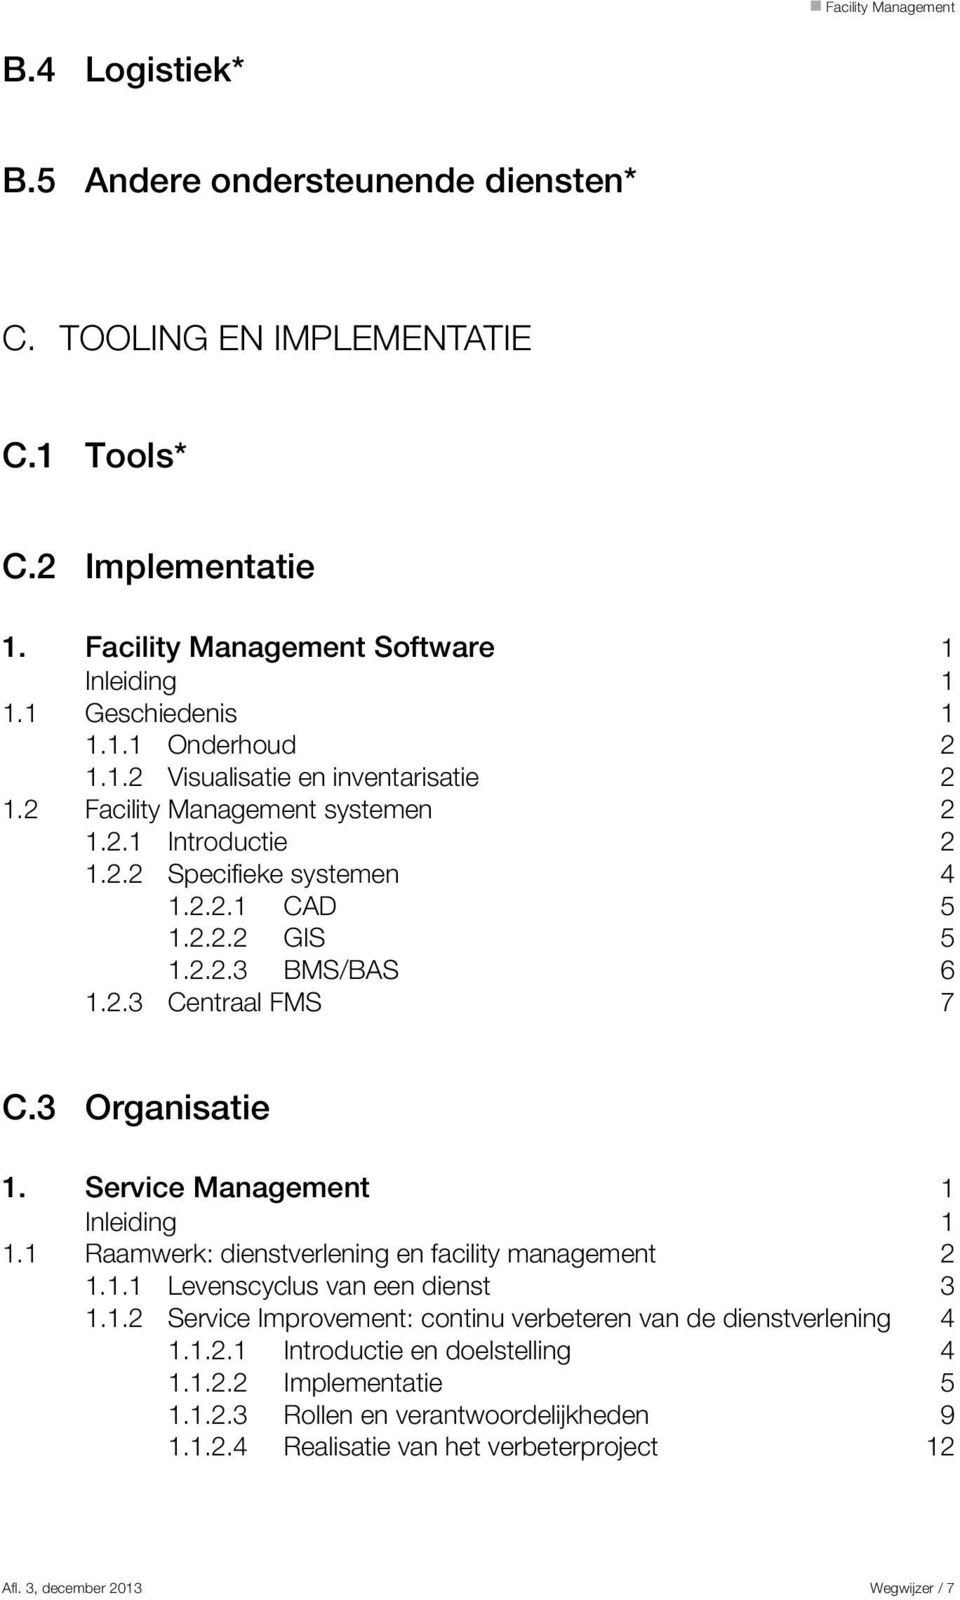 Service Management 1 Inleiding 1 1.1 Raamwerk: dienstverlening en facility management 2 1.1.1 Levenscyclus van een dienst 3 1.1.2 Service Improvement: continu verbeteren van de dienstverlening 4 1.